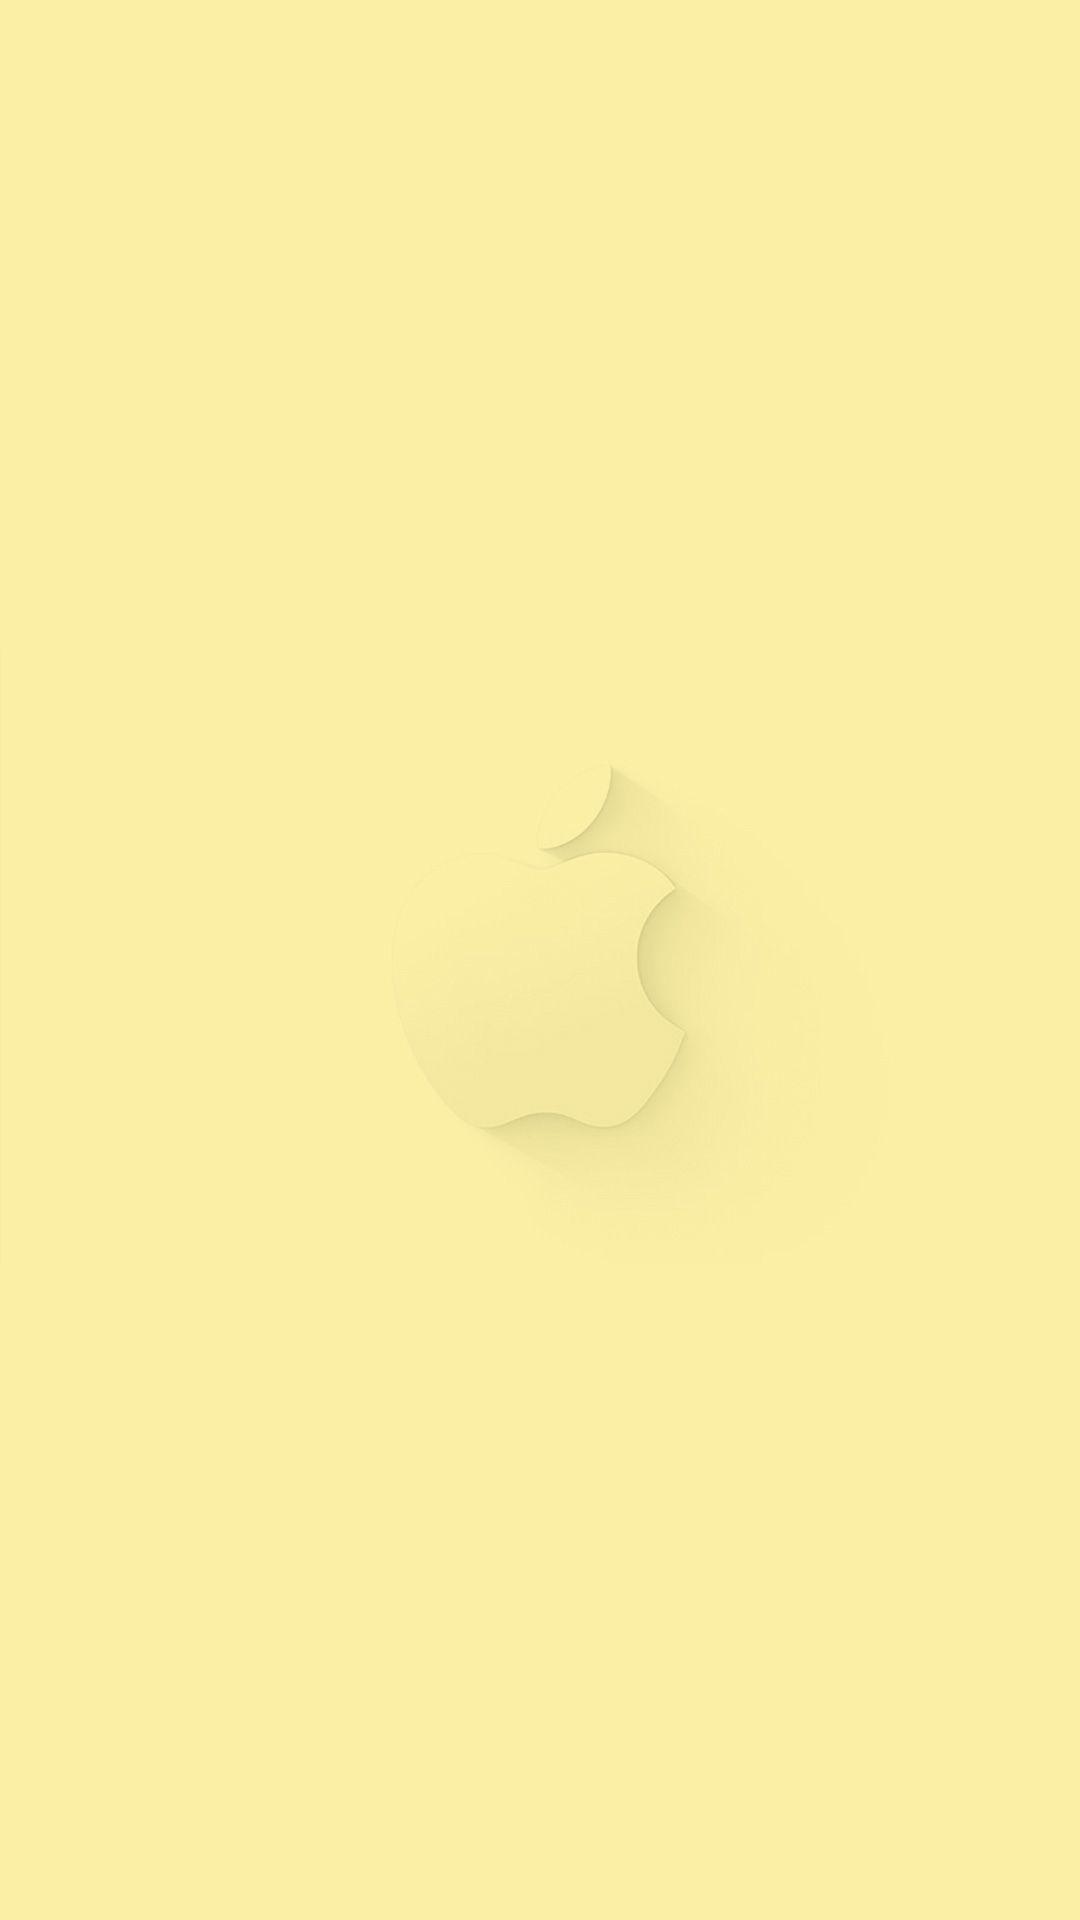 Pastel Yellow iPhone Wallpaper Free Pastel Yellow